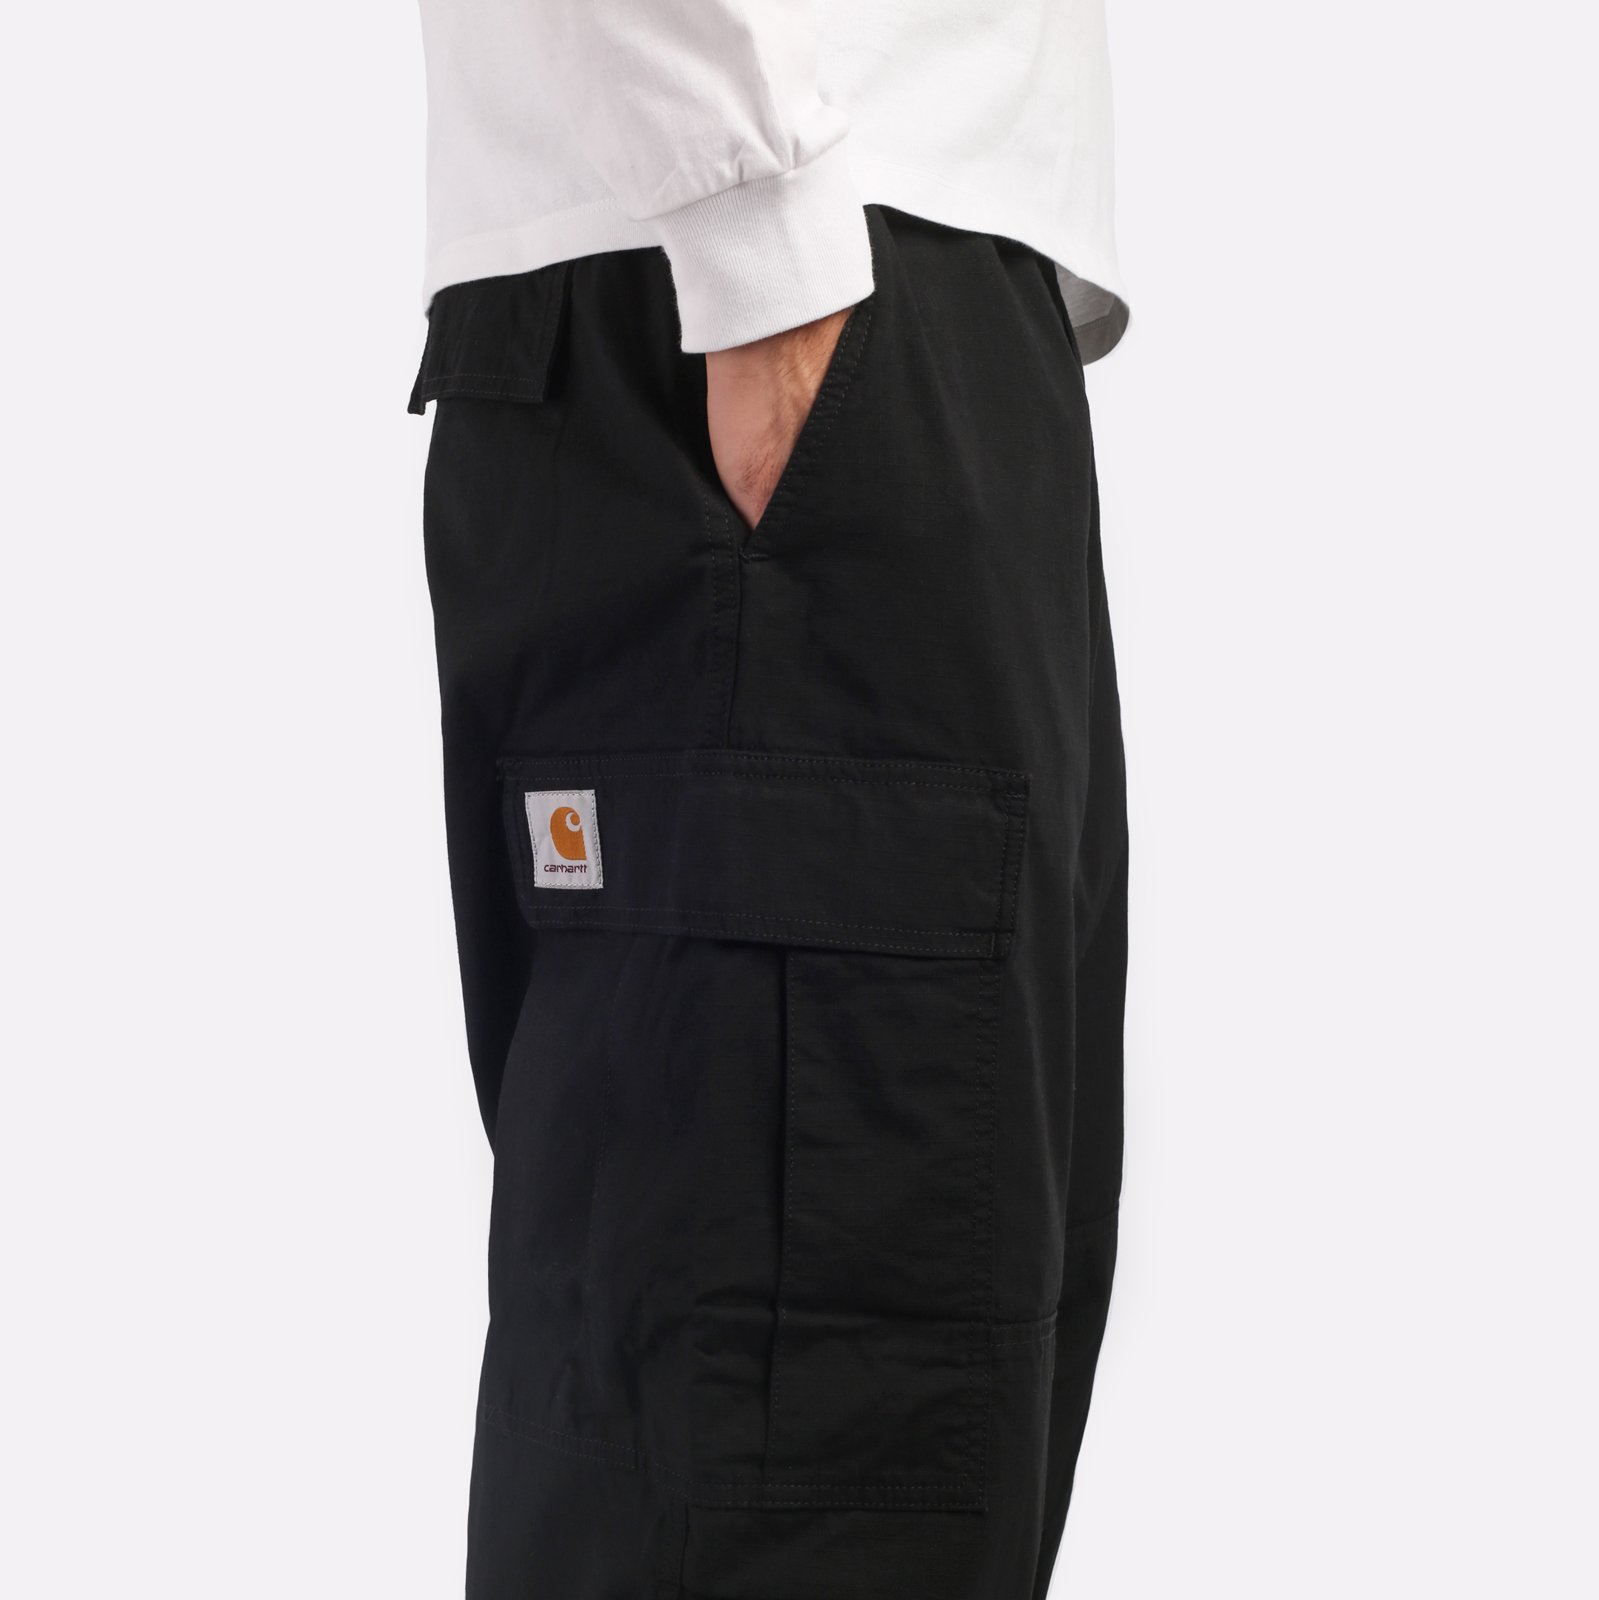 мужские черные брюки Carhartt WIP Jet Cargo Pant I032967-black - цена, описание, фото 4